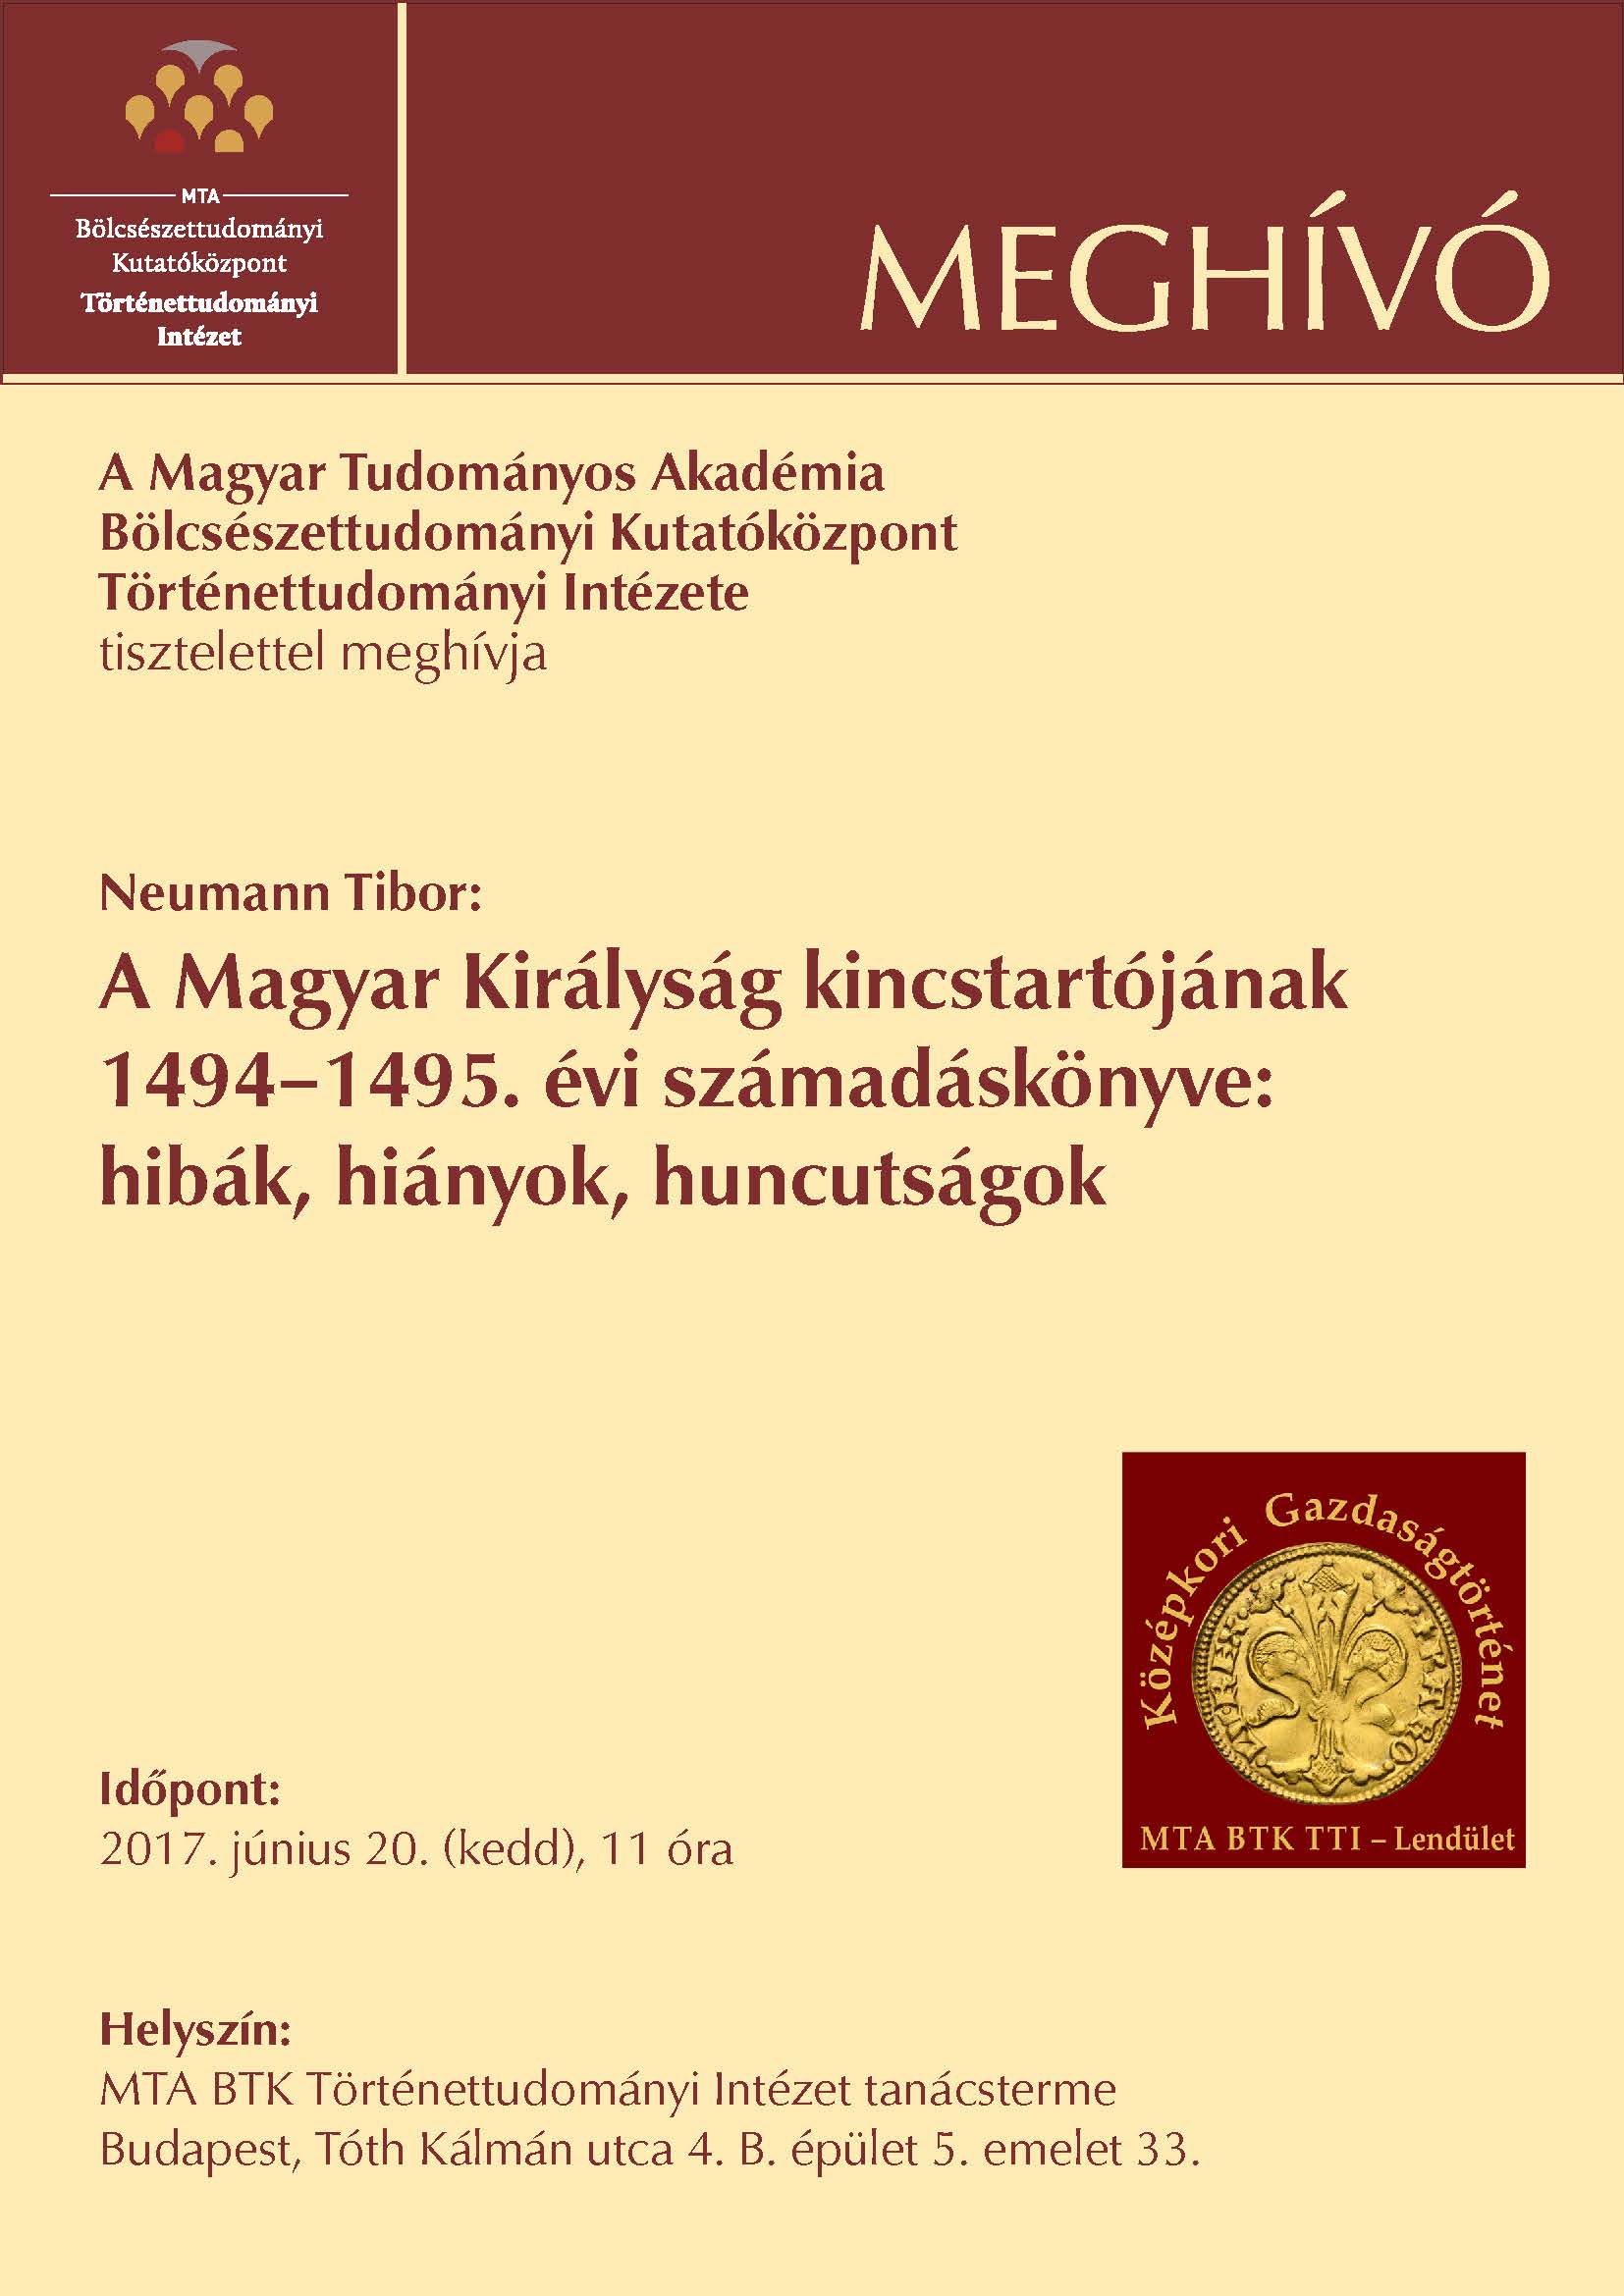  A Magyar Királyság kincstartójának 1494–1495. évi számadáskönyve